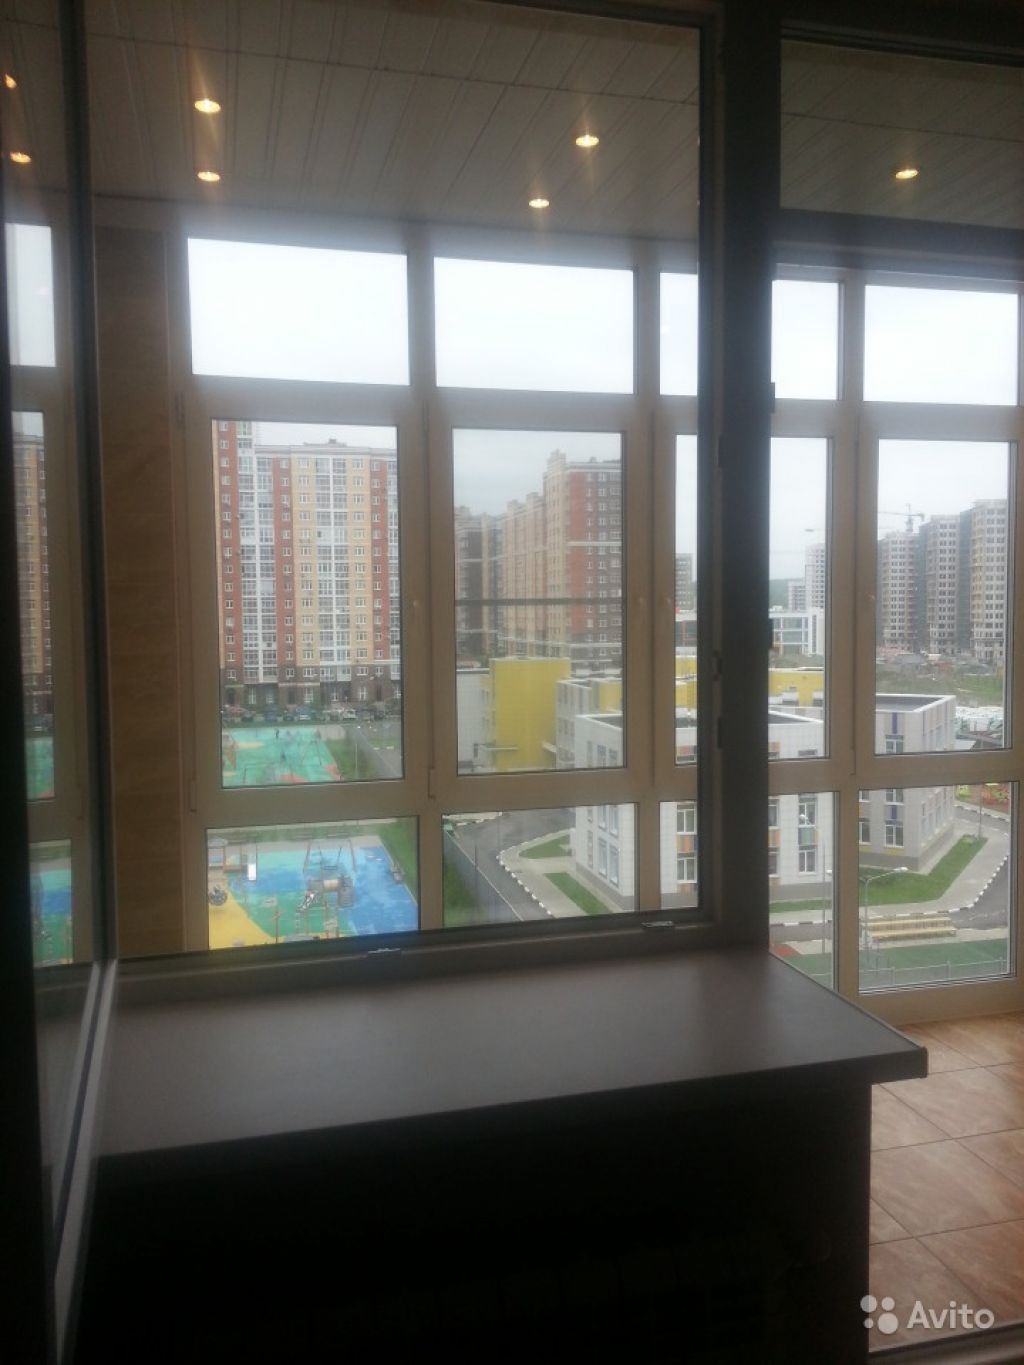 Сдам квартиру 1-к квартира 51 м² на 7 этаже 16-этажного монолитного дома в Москве. Фото 1